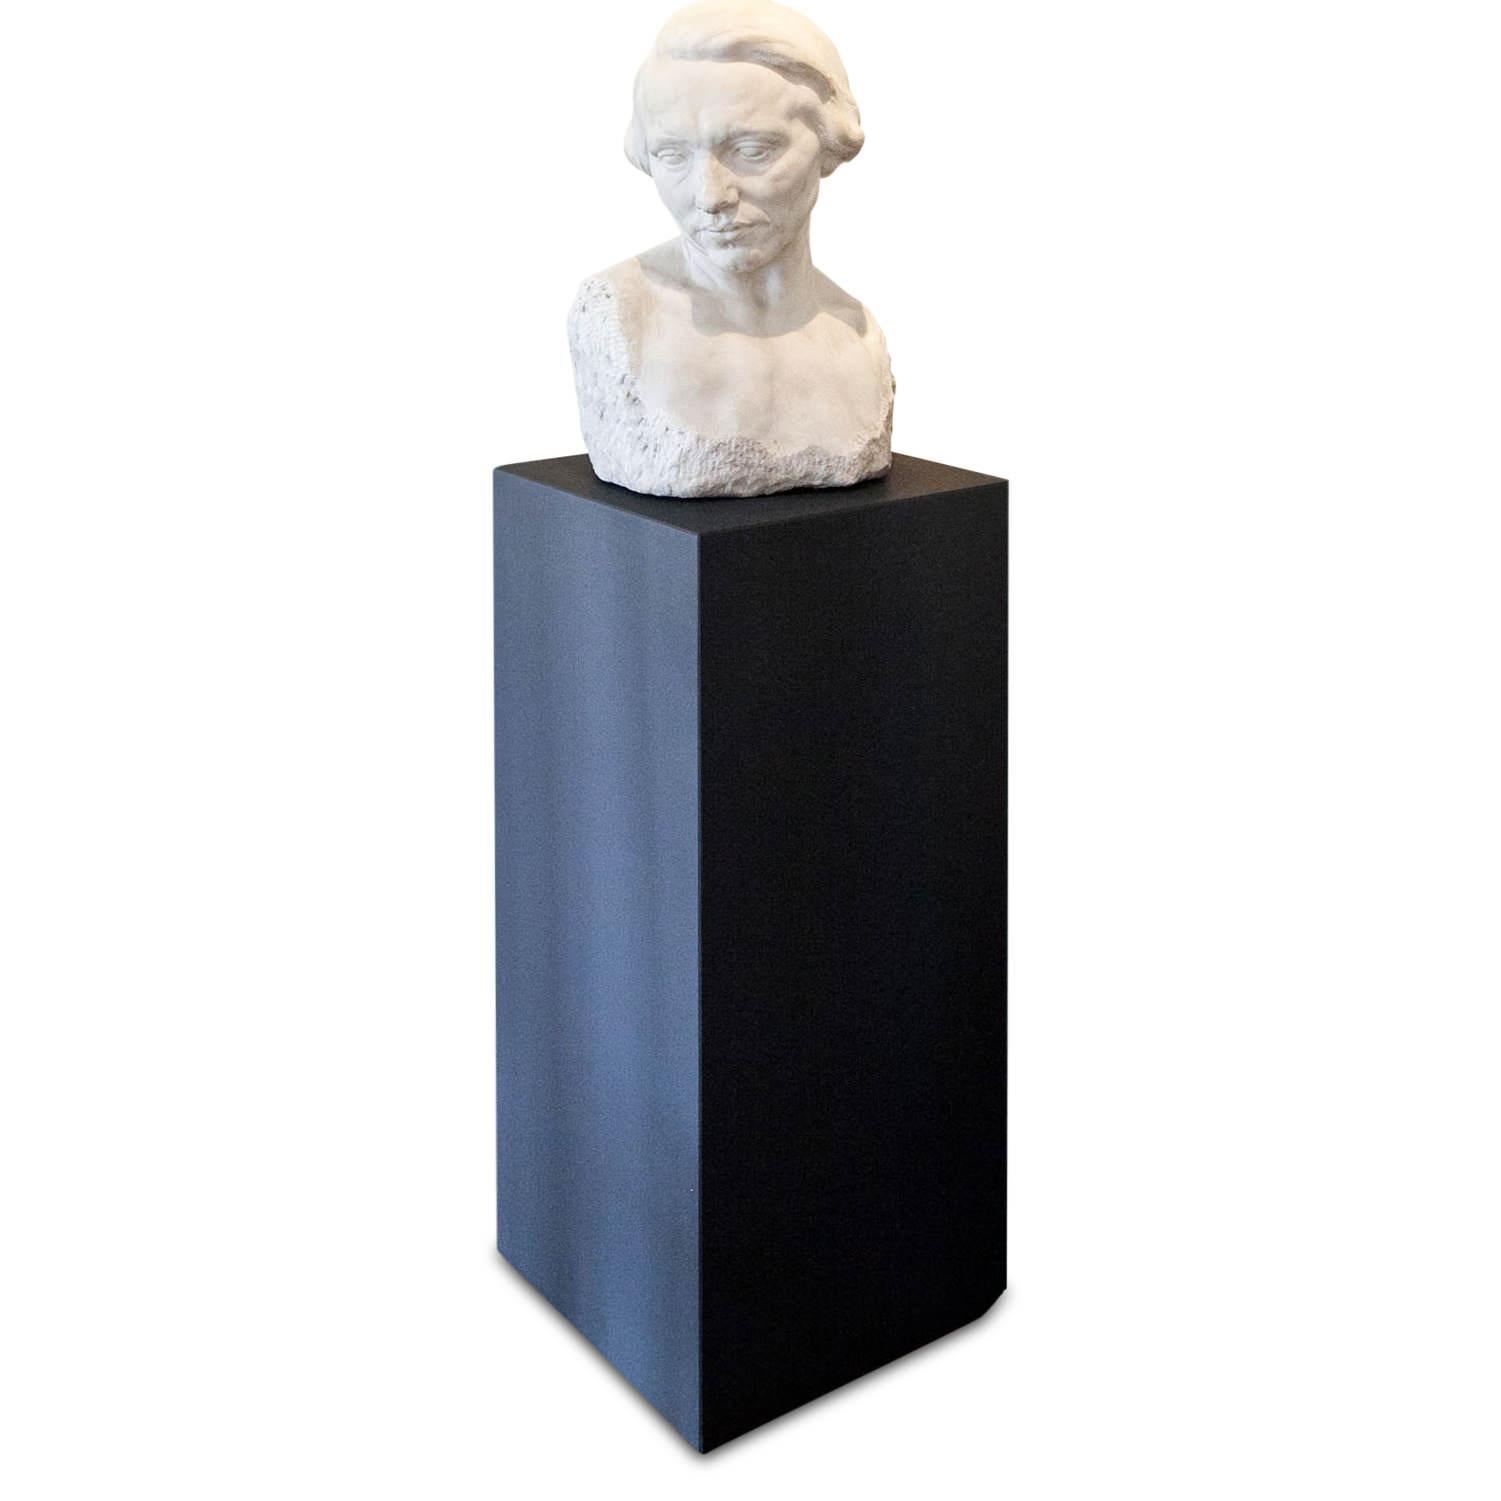 Skulptur aus Marmor von einem unbekannten Bildhauer des frühen 20. Jahrhunderts, die eine Frau mittleren Alters darstellt. Der Oberkörper weist eine teilweise raue Oberfläche auf, der Kopf ist leicht geneigt.